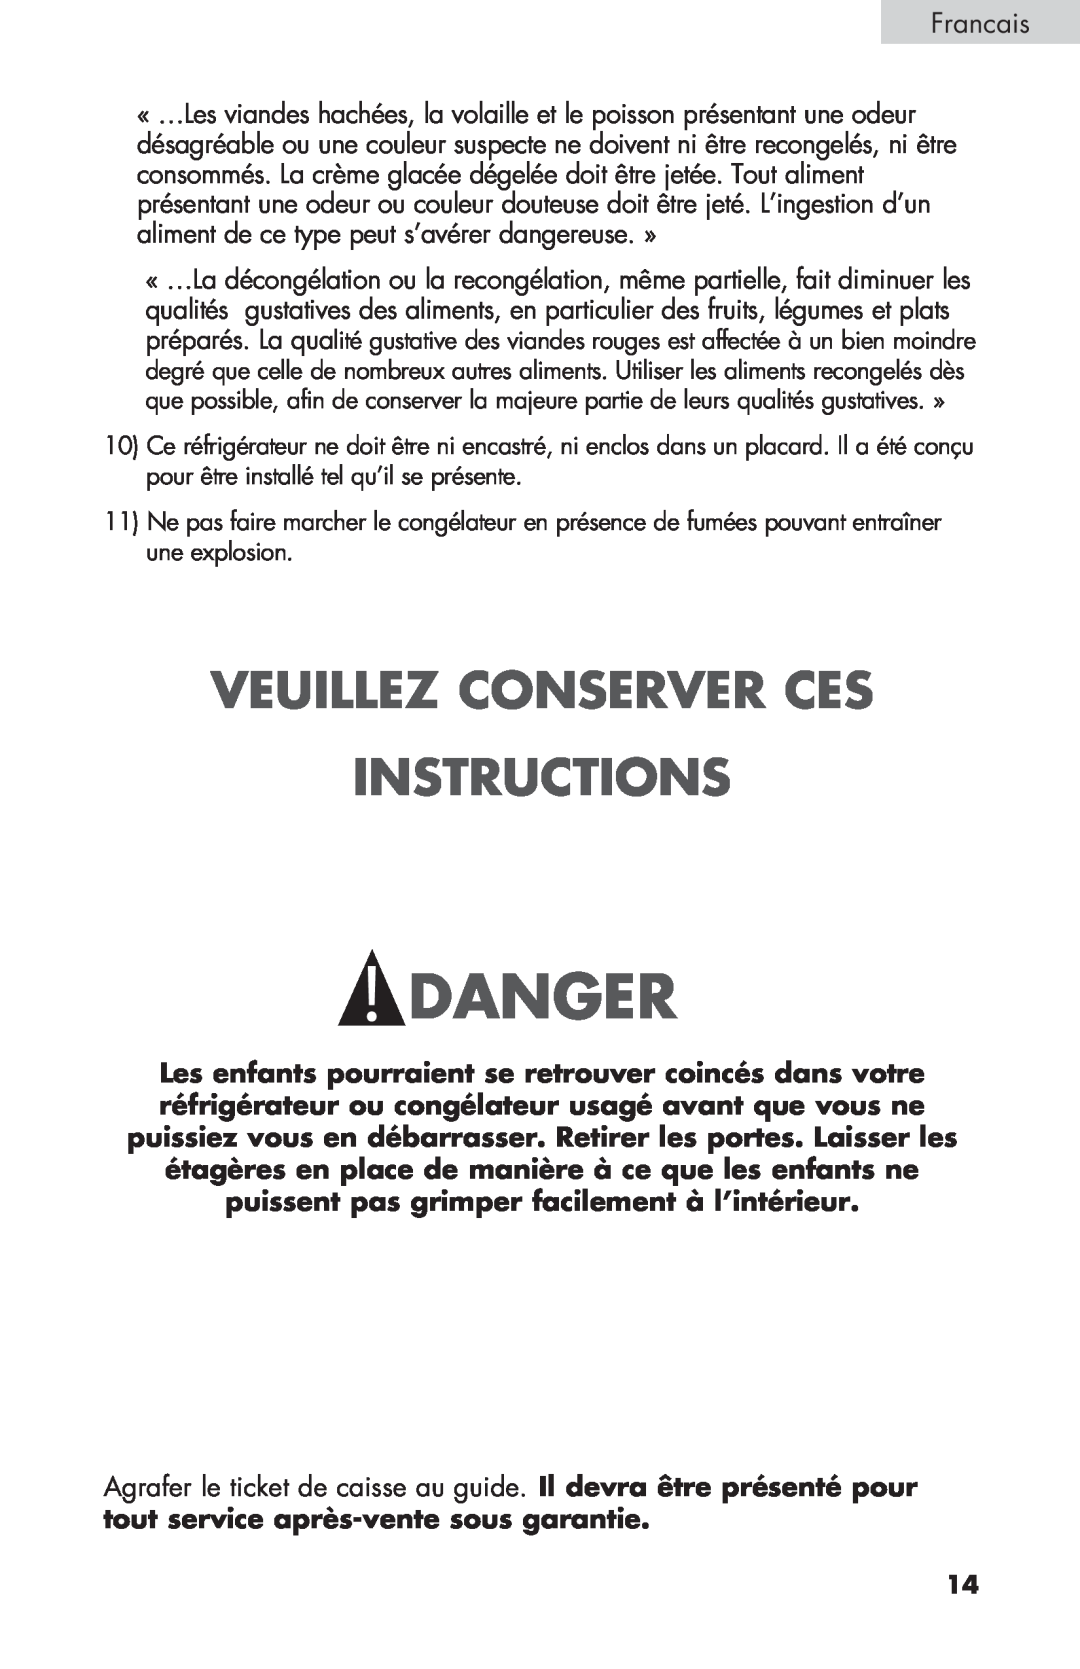 Haier BCF27B manual Veuillez Conserver Ces Instructions, Danger 